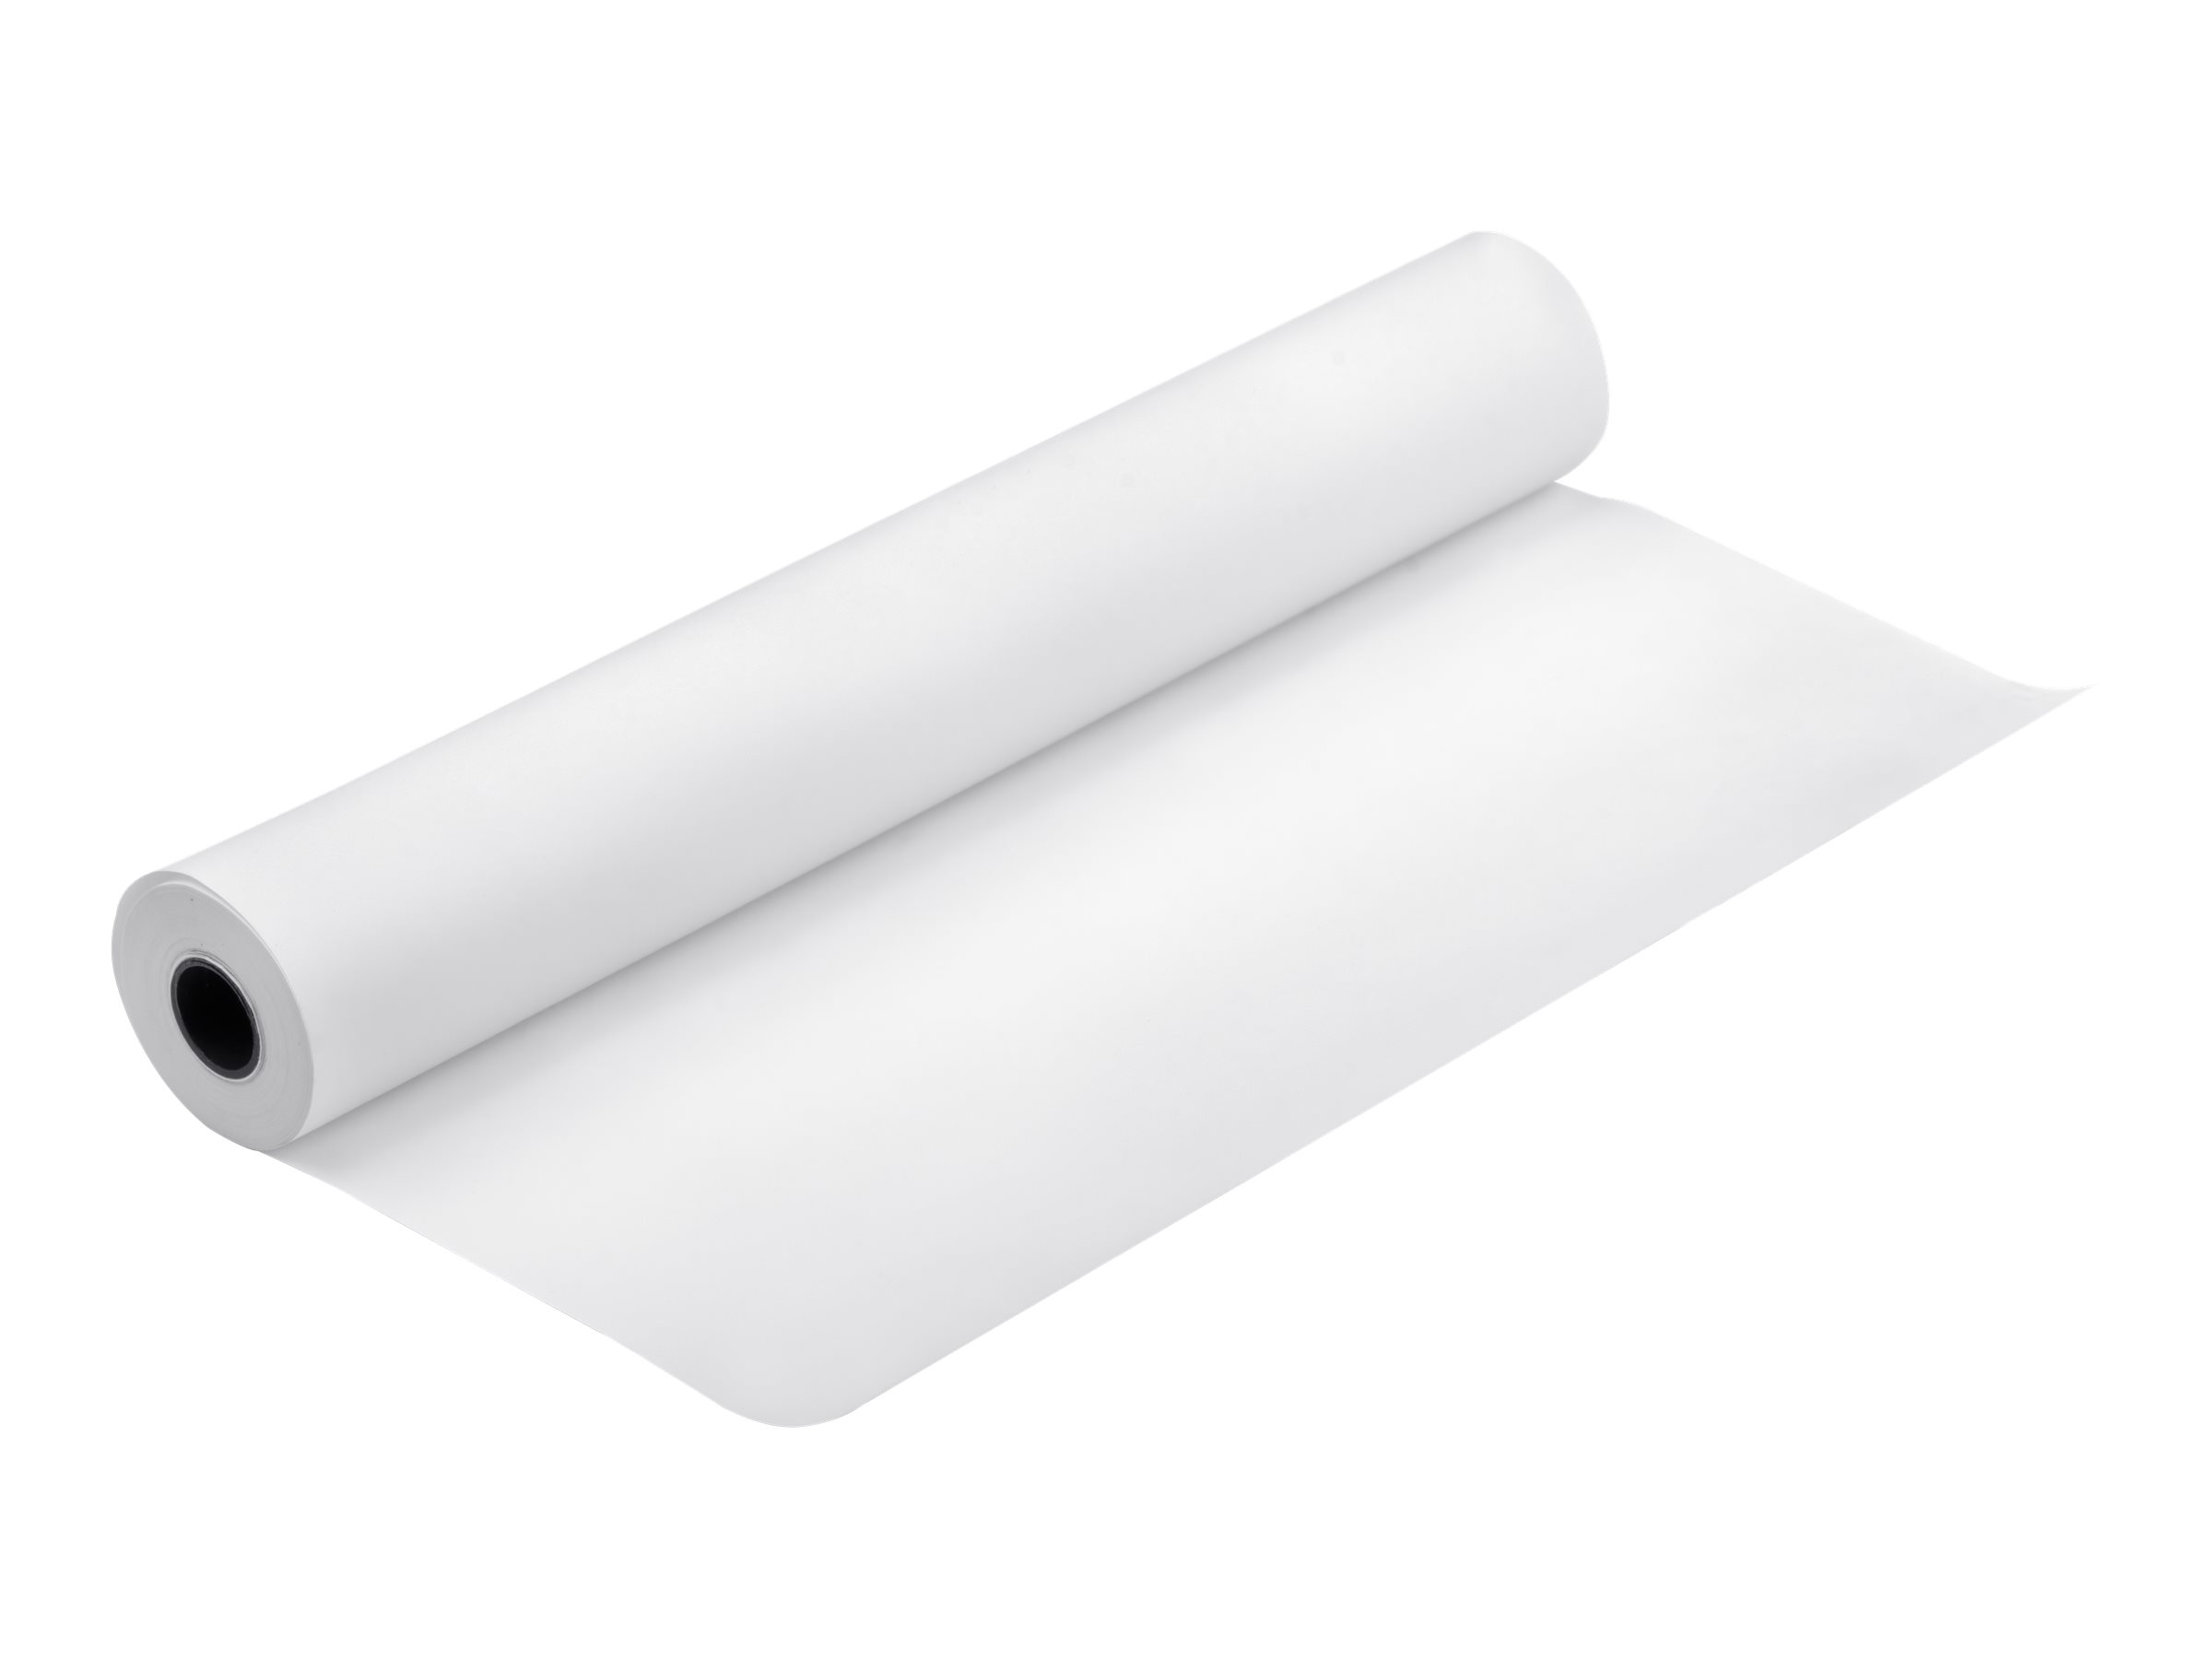 Epson Bond Paper White 80 - Blanc - Rouleau (106,7 cm x 50 m) - 80 g/m² - 1 rouleau(x) papier - pour Stylus Pro 11880, Pro 9700, Pro 9890; SureColor SC-P20000, SC-T7000, SC-T7200 - C13S045276 - Rouleaux de papier